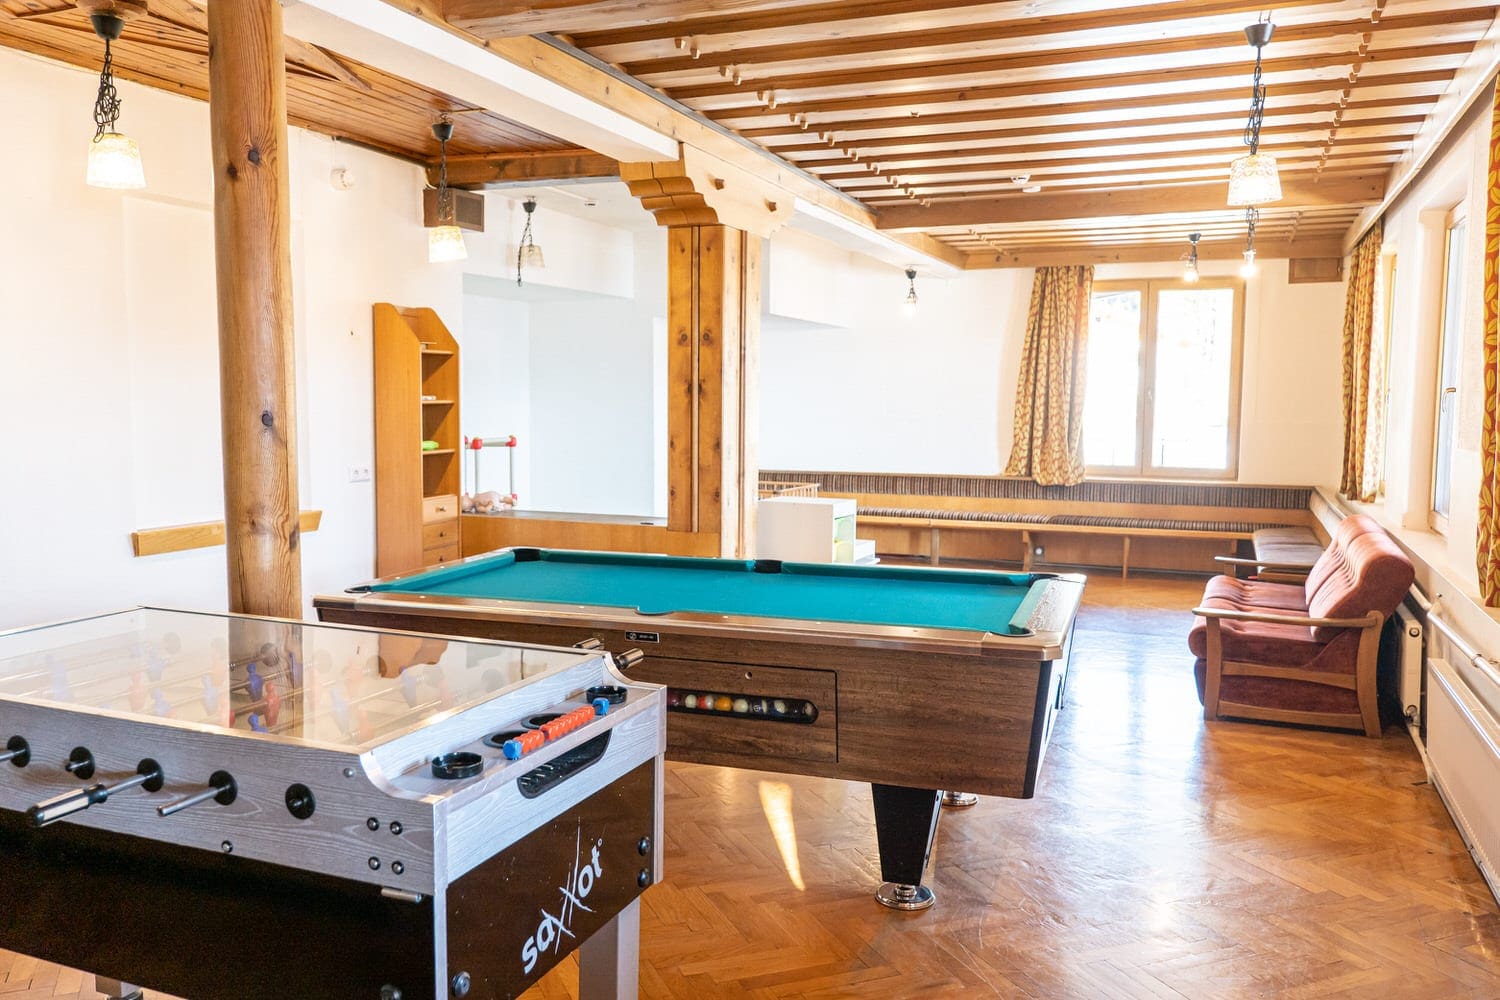 Jugendhotel Edelweiss - Jugendherberge Spieleraum mit Billiard und Tischfussball